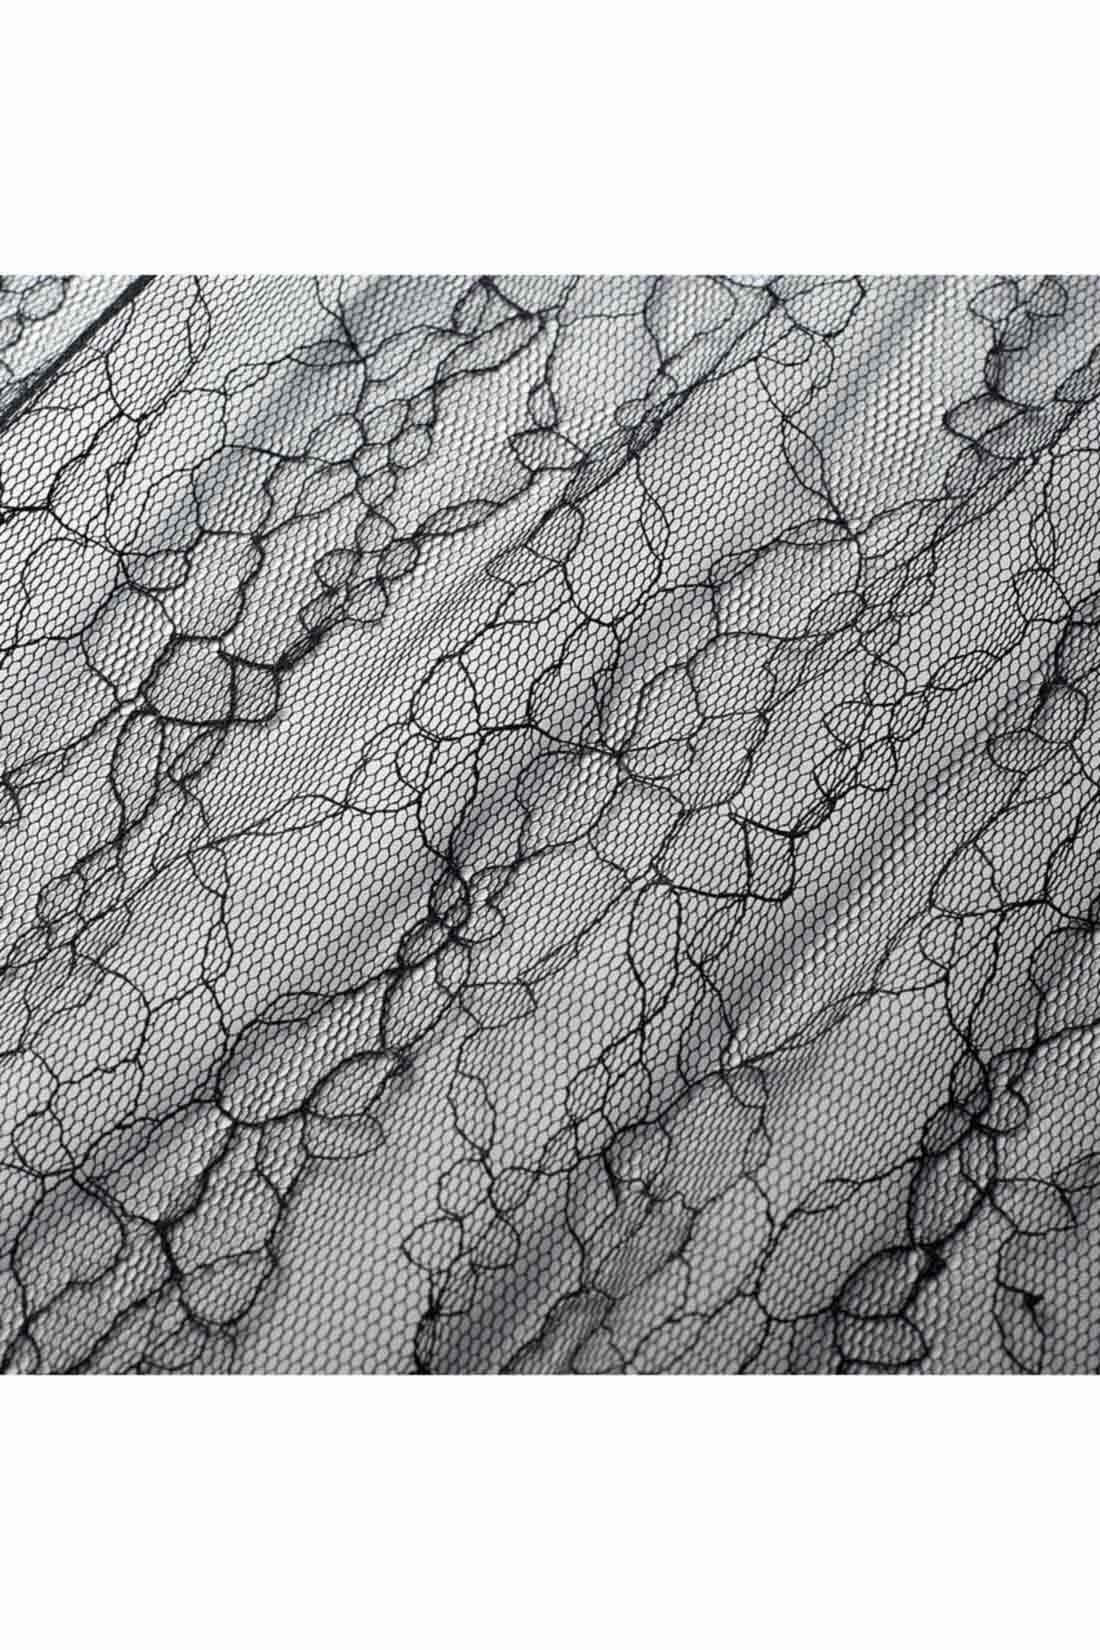 イディット|IEDIT[イディット]　コーデの幅が広がる チュールレーススカートセット〈ブラック〉|ふわりとエアリーでやわらかなチュールレース素材。透け感が上品な花モチーフ。